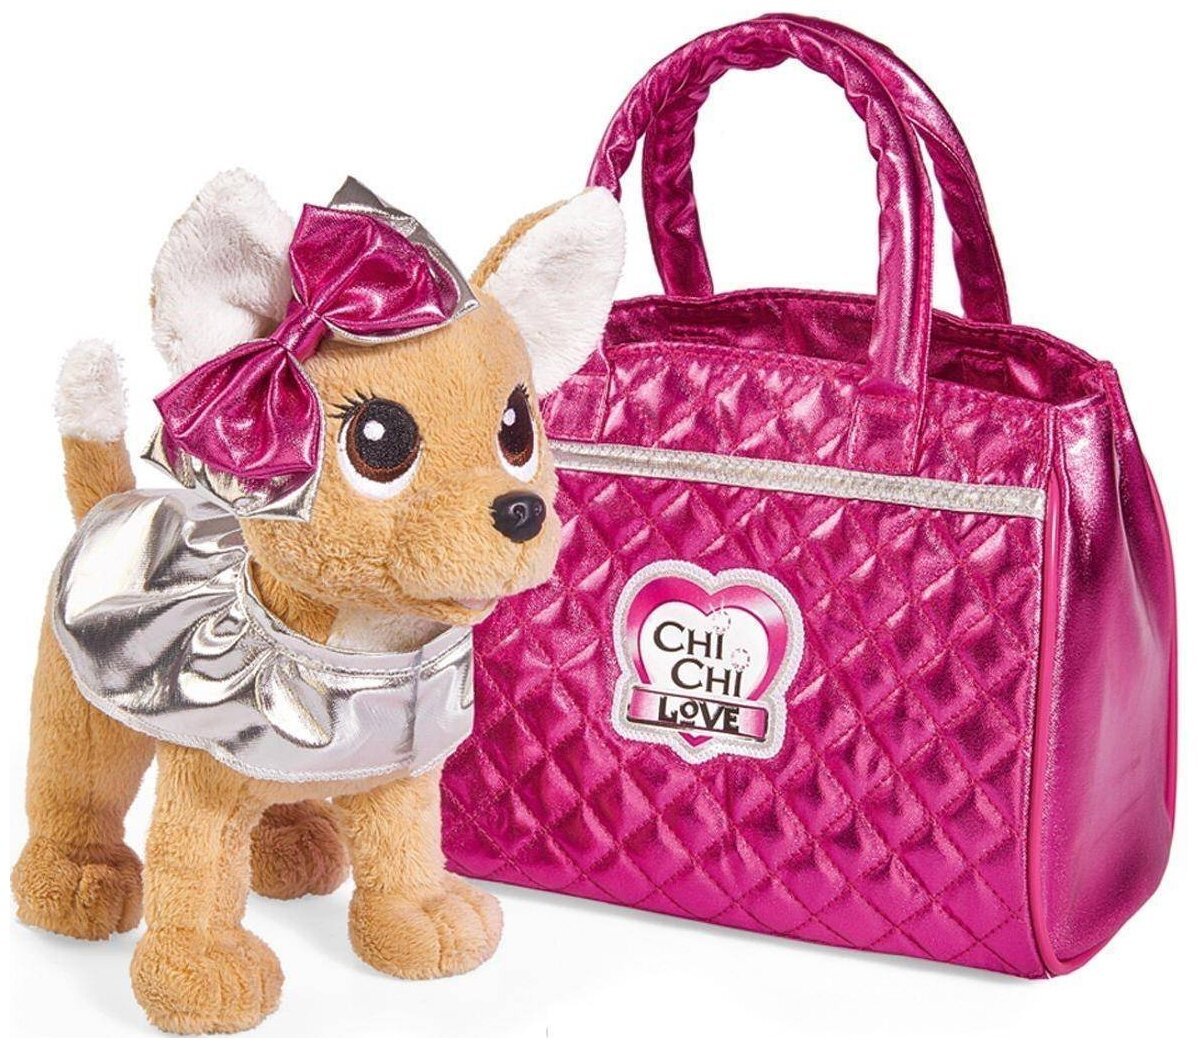 Плюшевая собачка в сумочке 20 см Chi-Chi love Гламур с розовой сумочкой и бантом Simba 5893125 / Чичи Лав